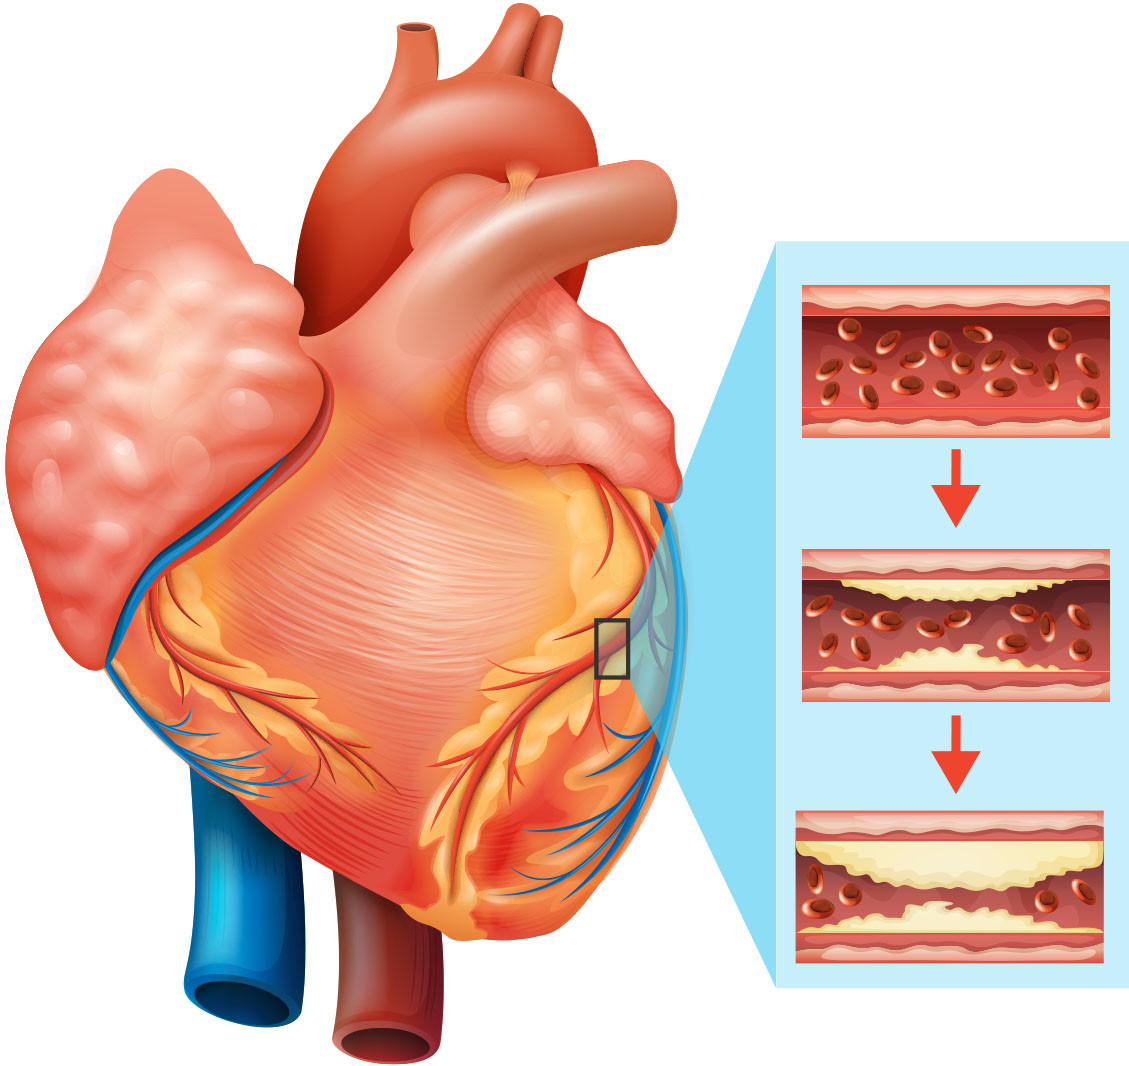 Suy tim là biến chứng tim mạch nguy hiểm, đe dọa tới sức khỏe và tính mạng của bệnh nhân